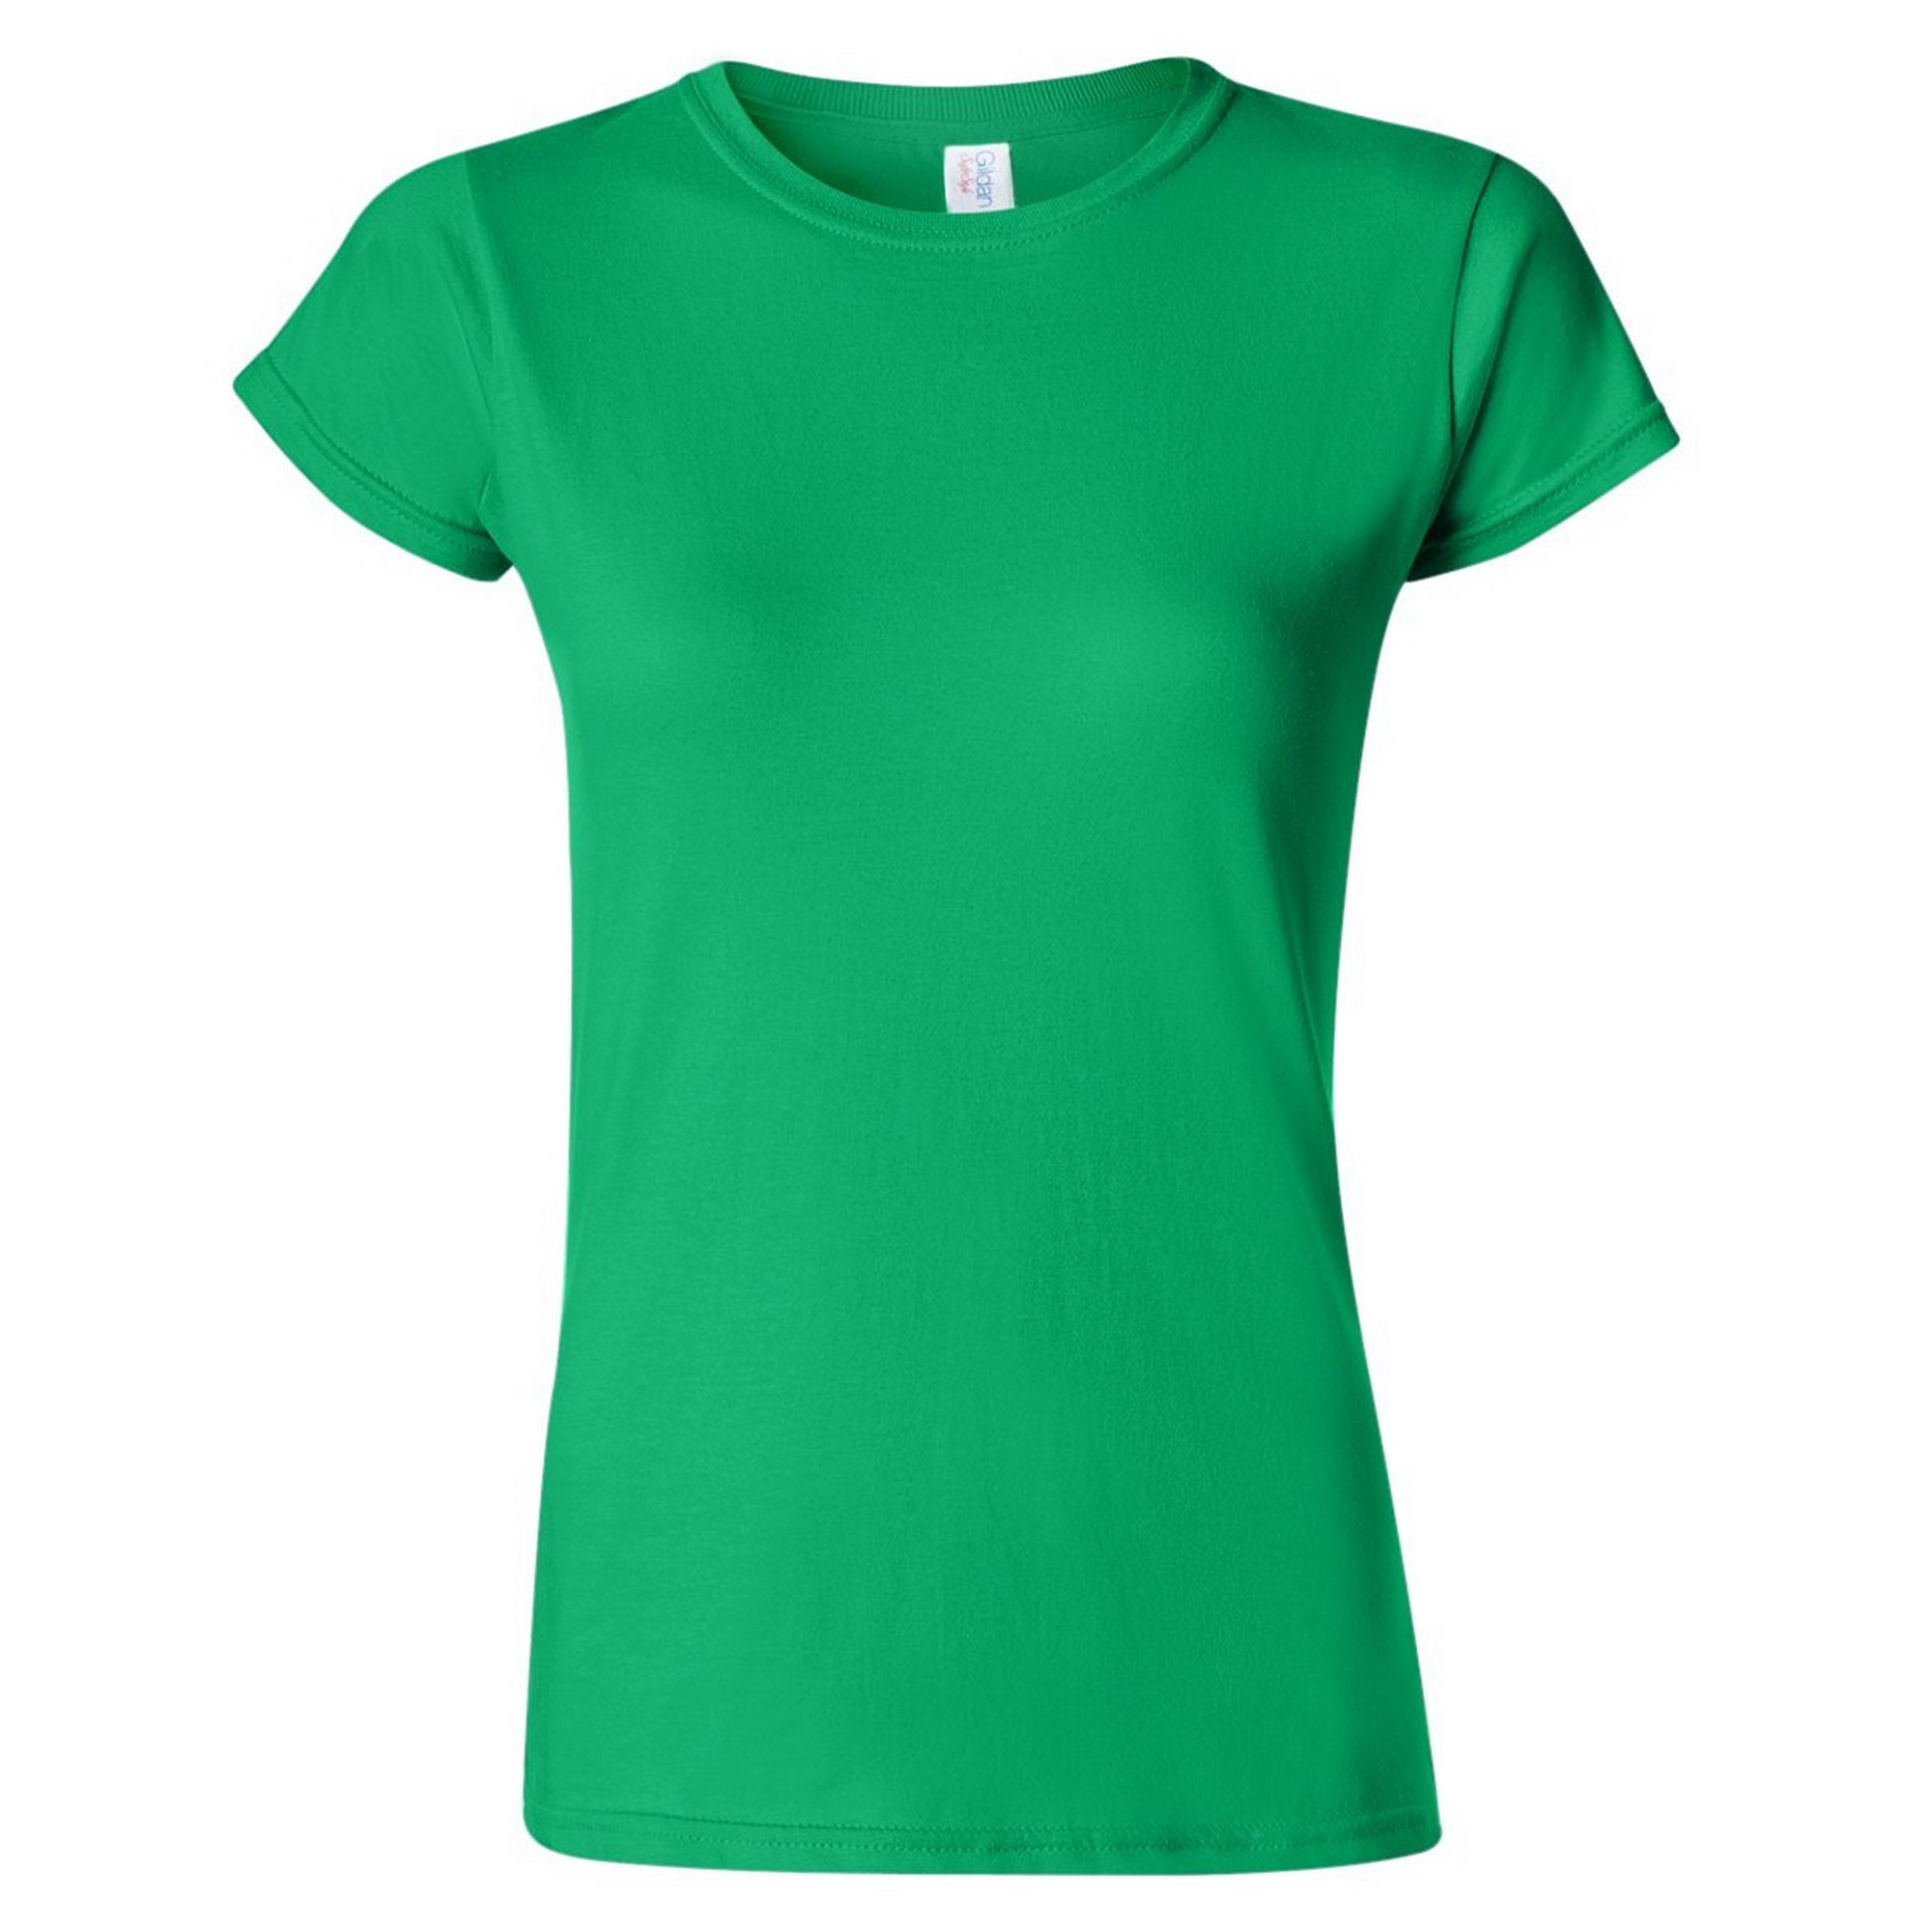 T-shirt Gildan - verde-oscuro - 